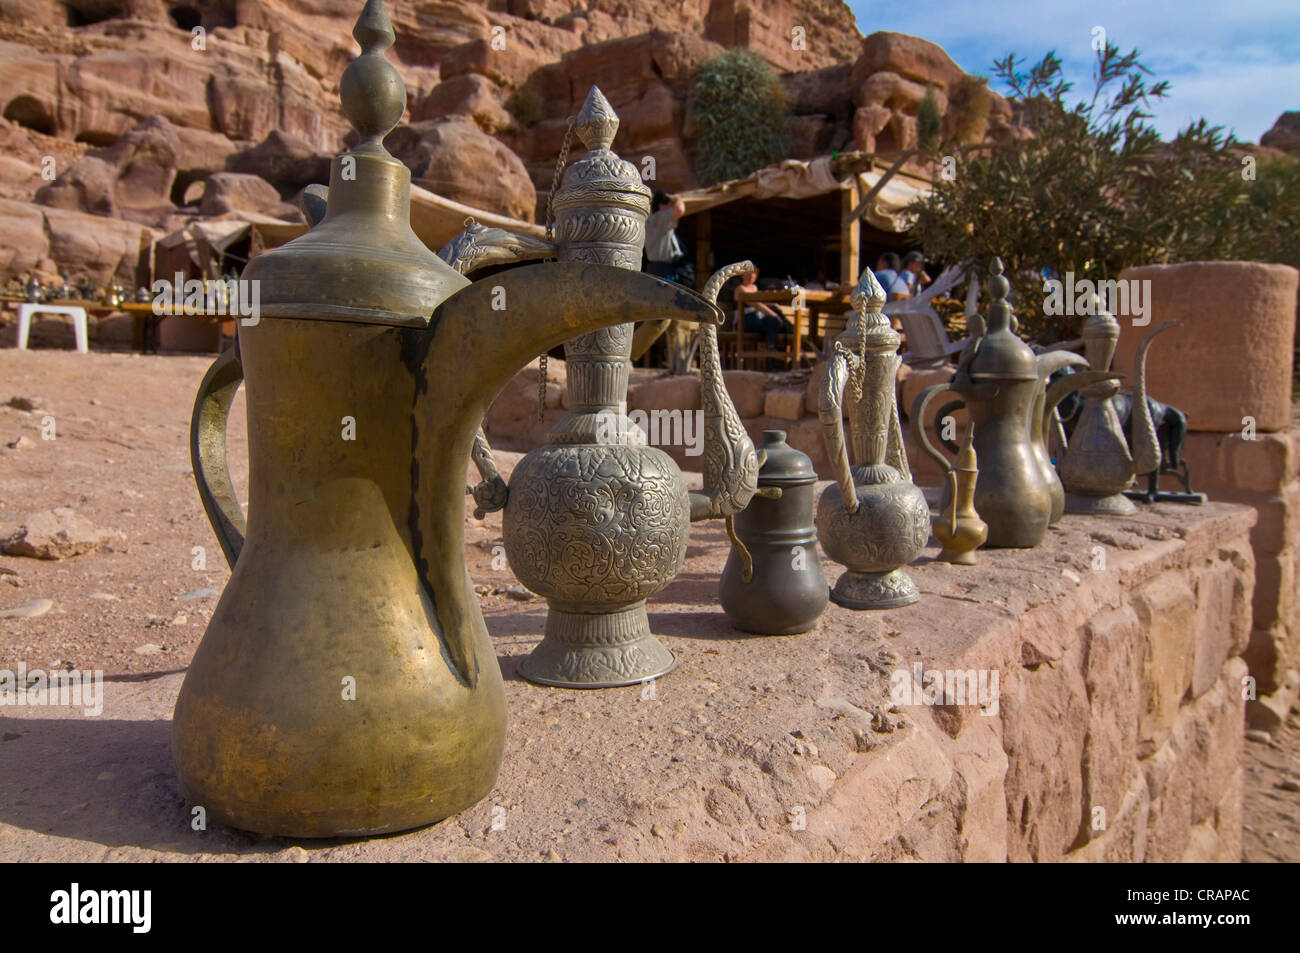 Vieux pots à vendre comme souvenirs, Petra, Jordanie, Moyen-Orient, Asie Banque D'Images